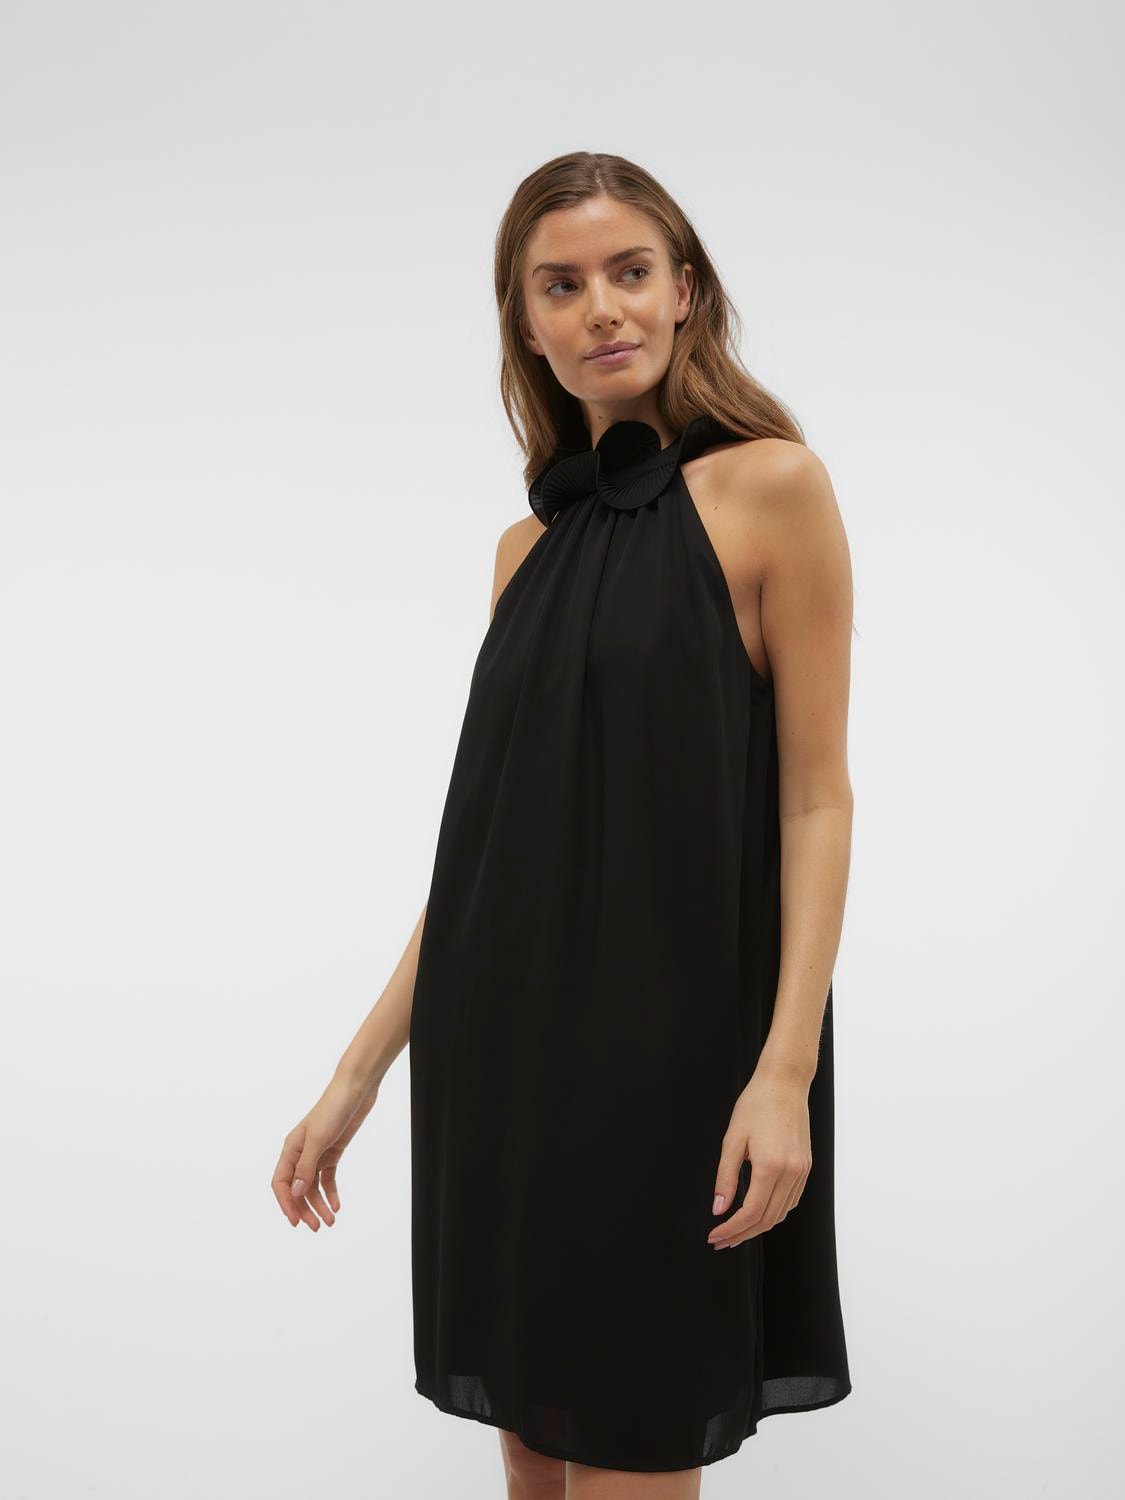 Vero Moda VMMERA Short dress -Black - 10307309